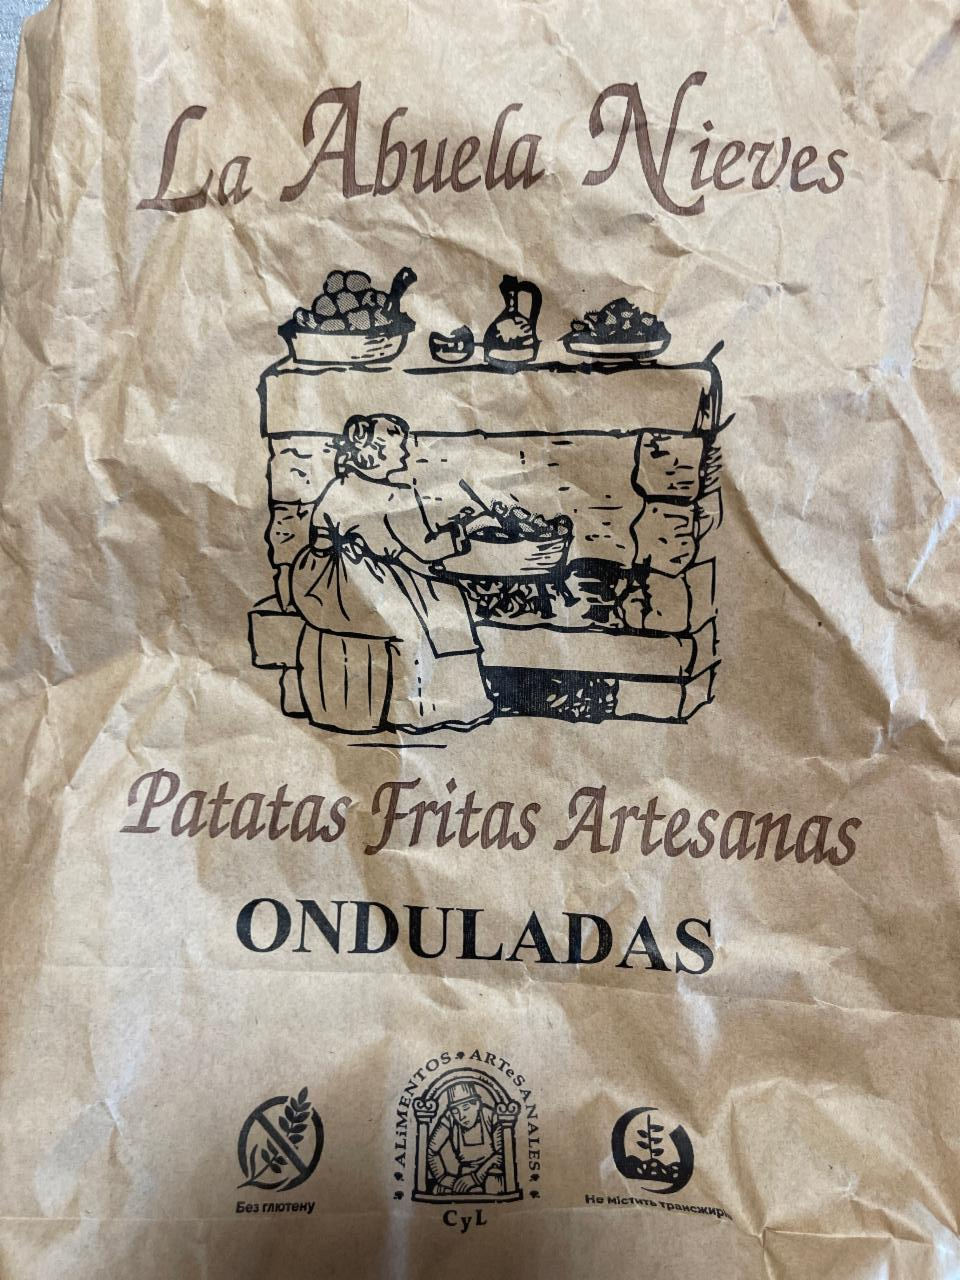 Фото - Чипсы картофельные рифленые La Abuela Nieves